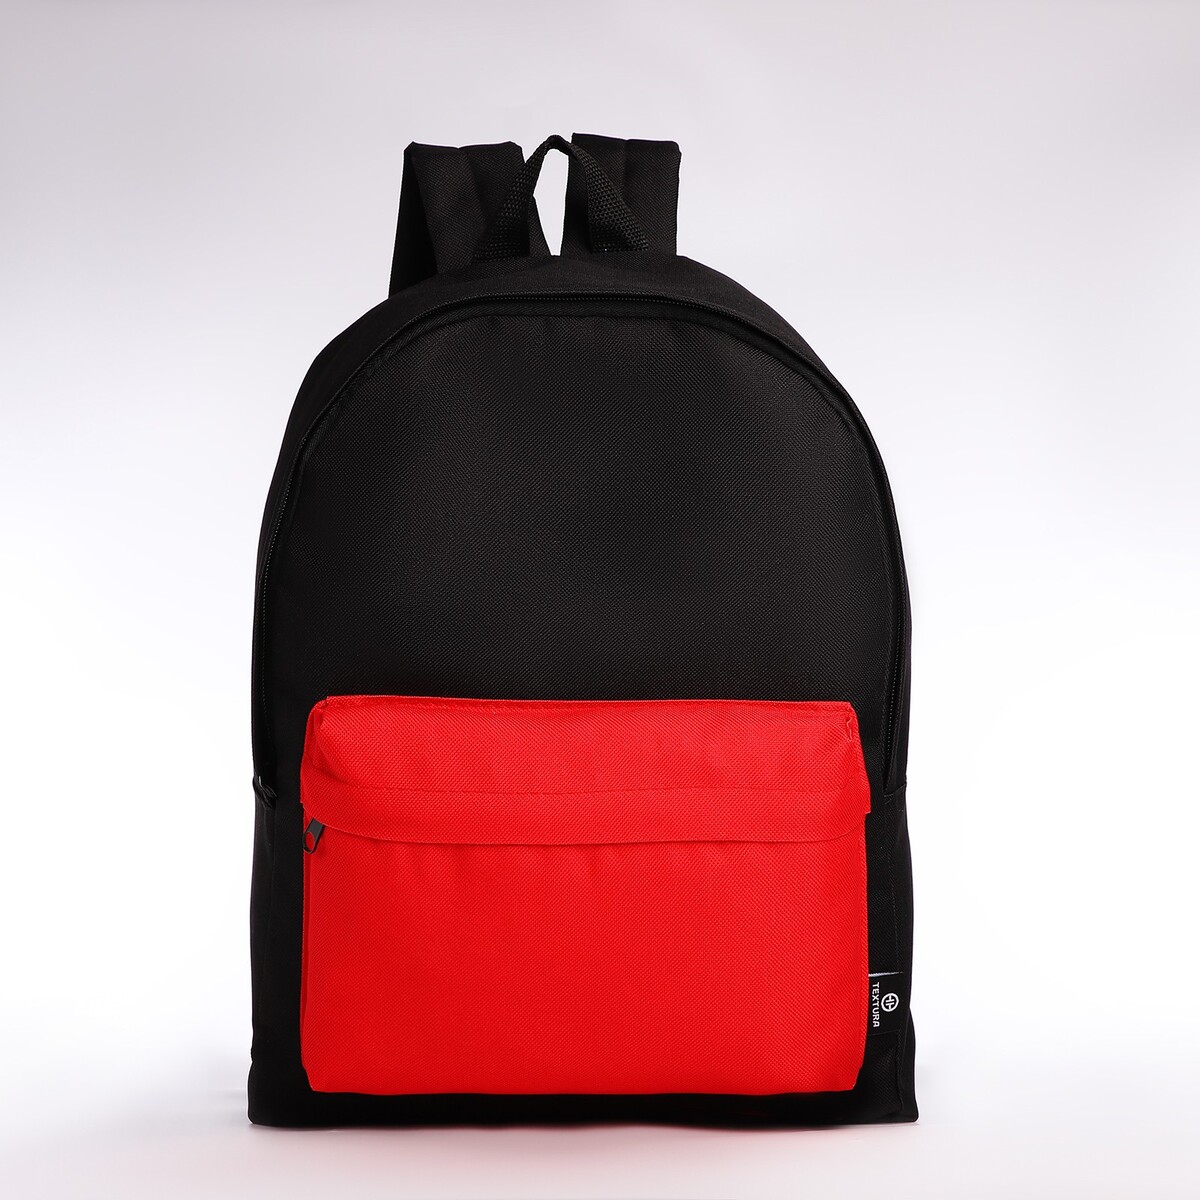 Спортивный рюкзак textura, 20 литров, цвет черный/красный рюкзак wenger next ryde 611991 16 красный антрацит 26 л